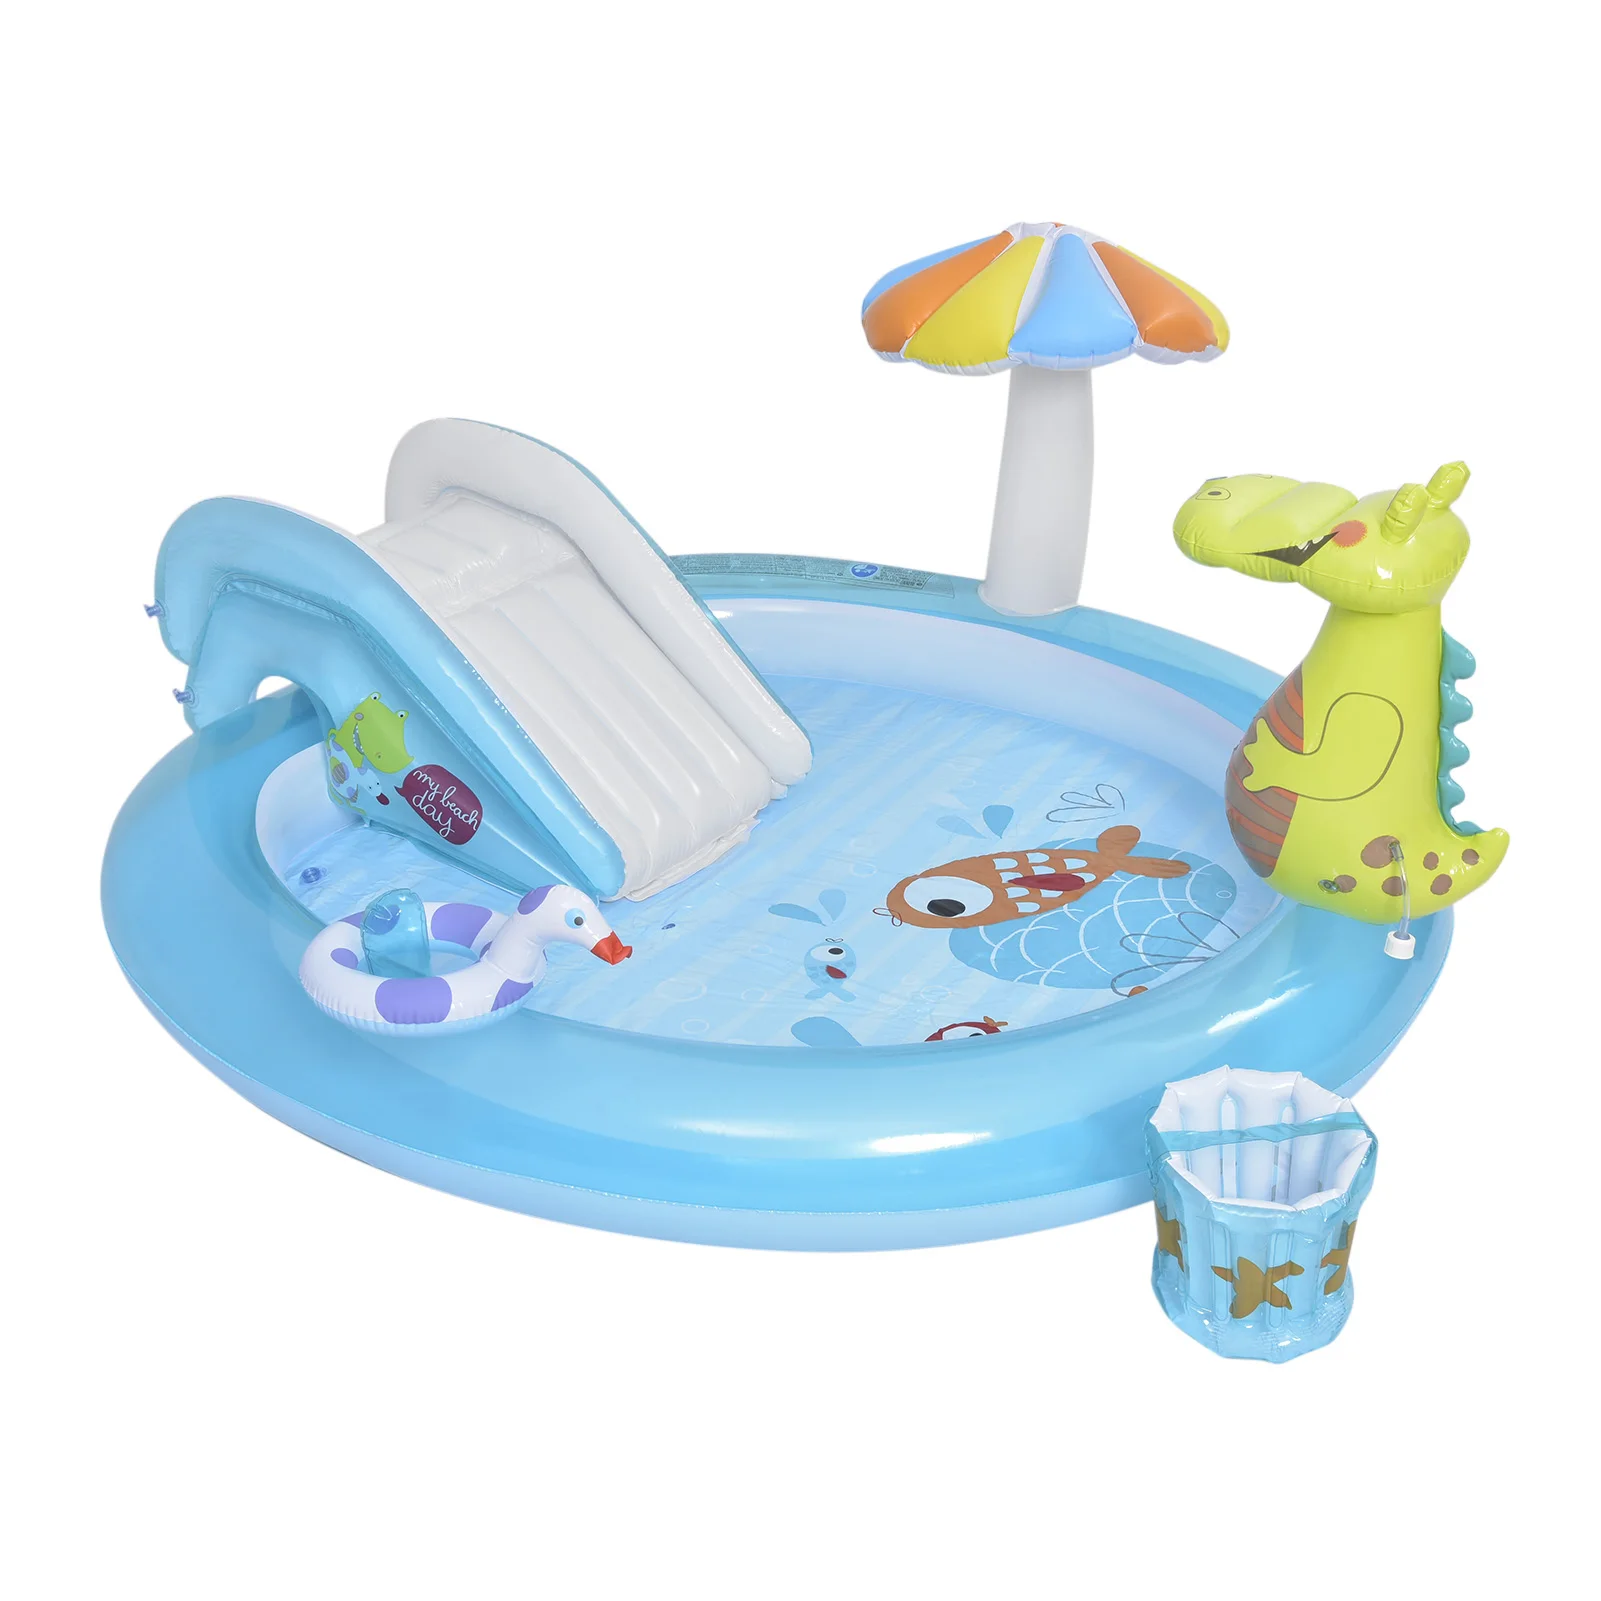 

Надувной бассейн «крокодил», Детский семейный бассейн с шарами для океана, надувной игровой бассейн, развлекательный бассейн